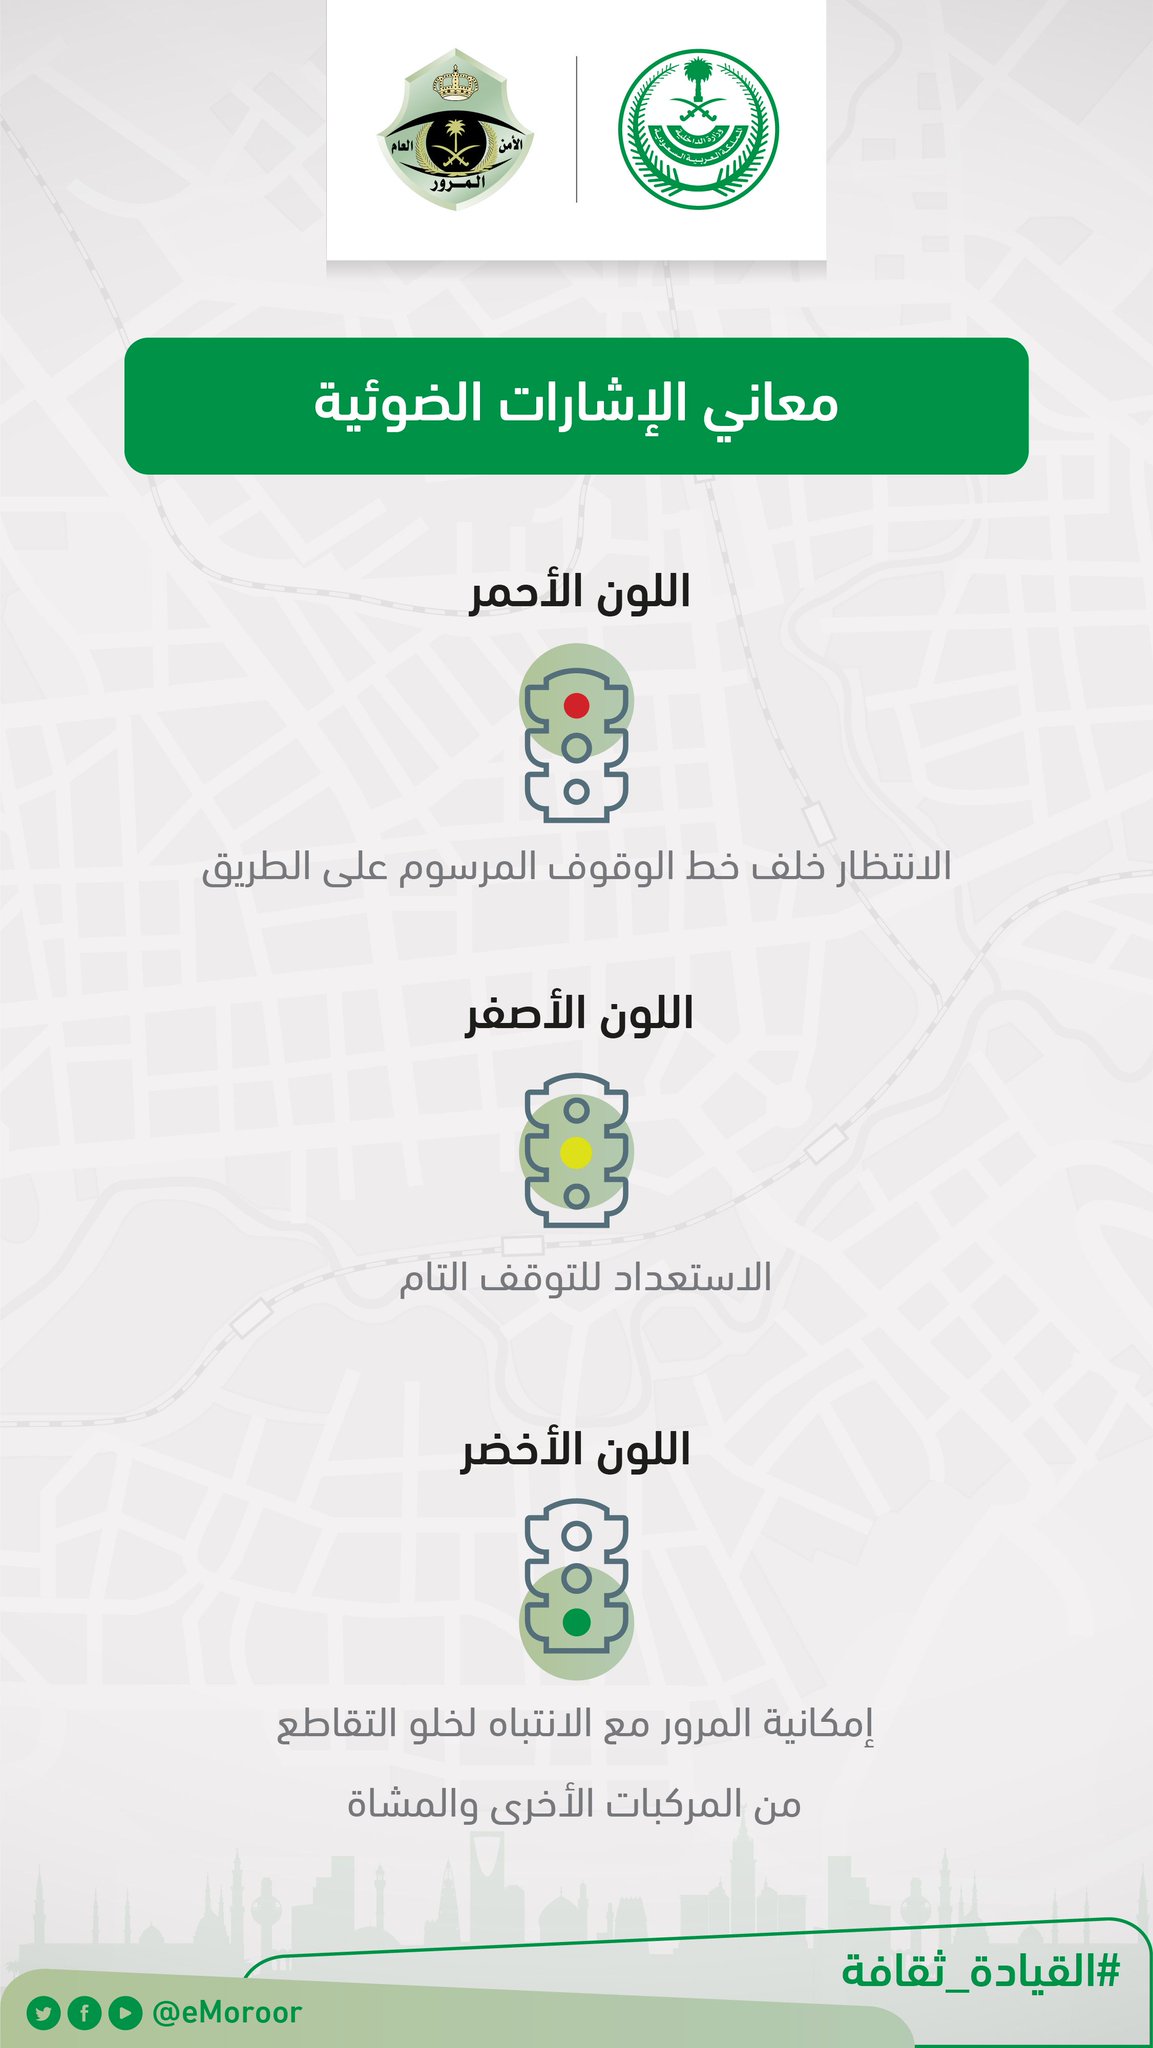 المرور السعودي On Twitter عندما يكون اللون الأخضر في إشارة